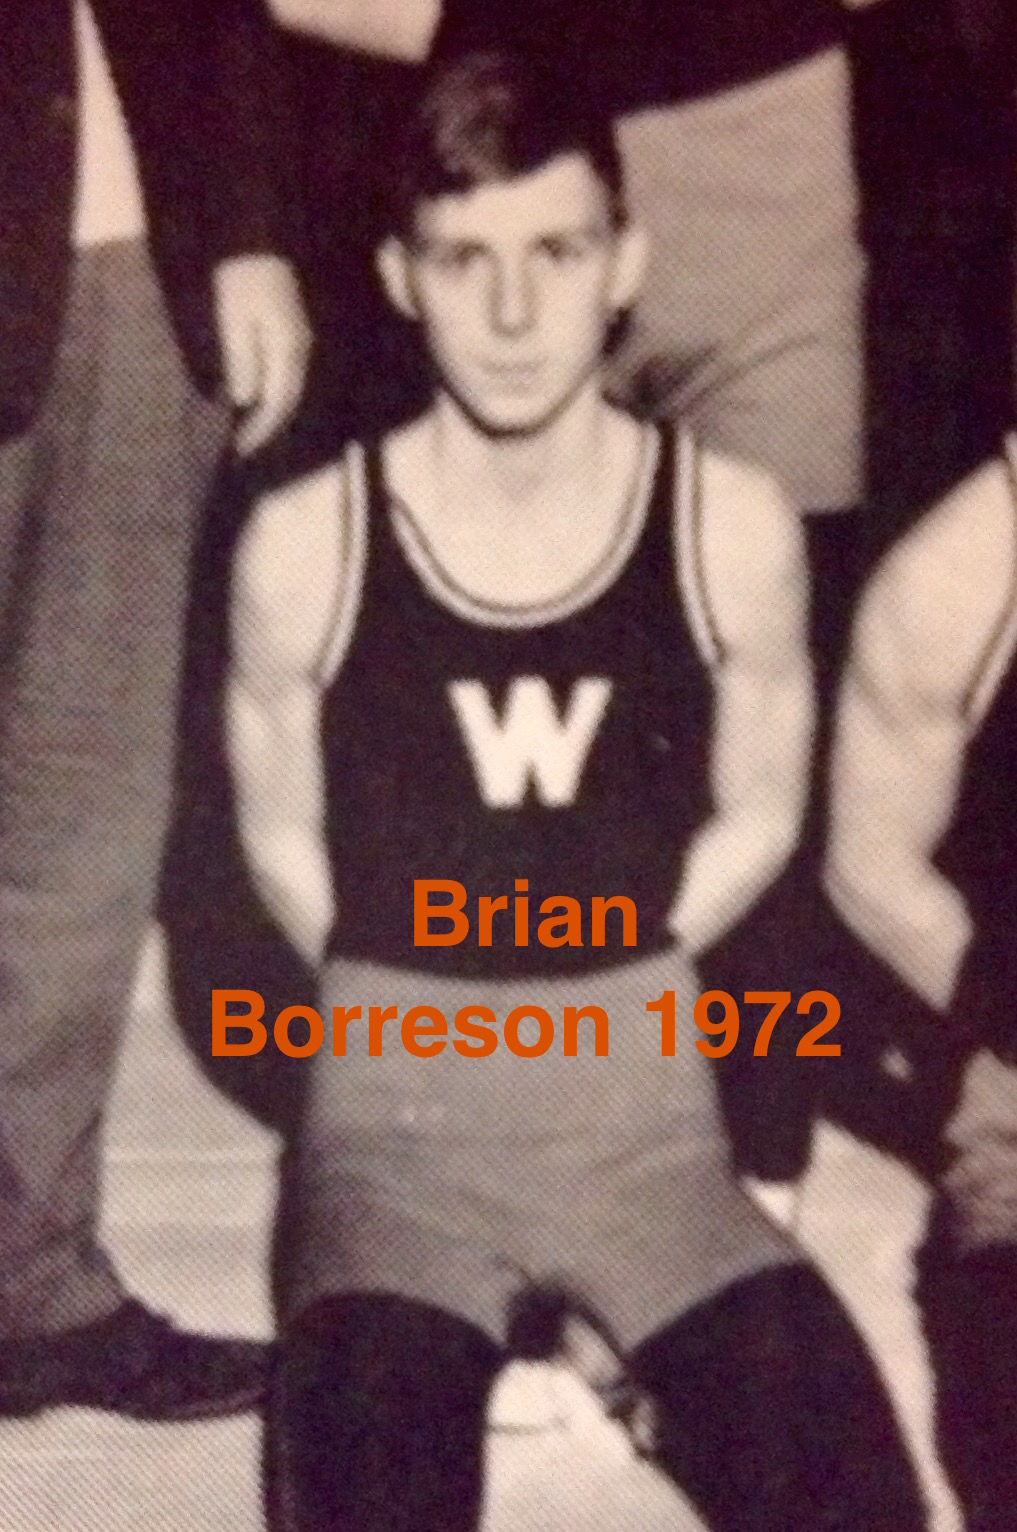 Brian Borreson